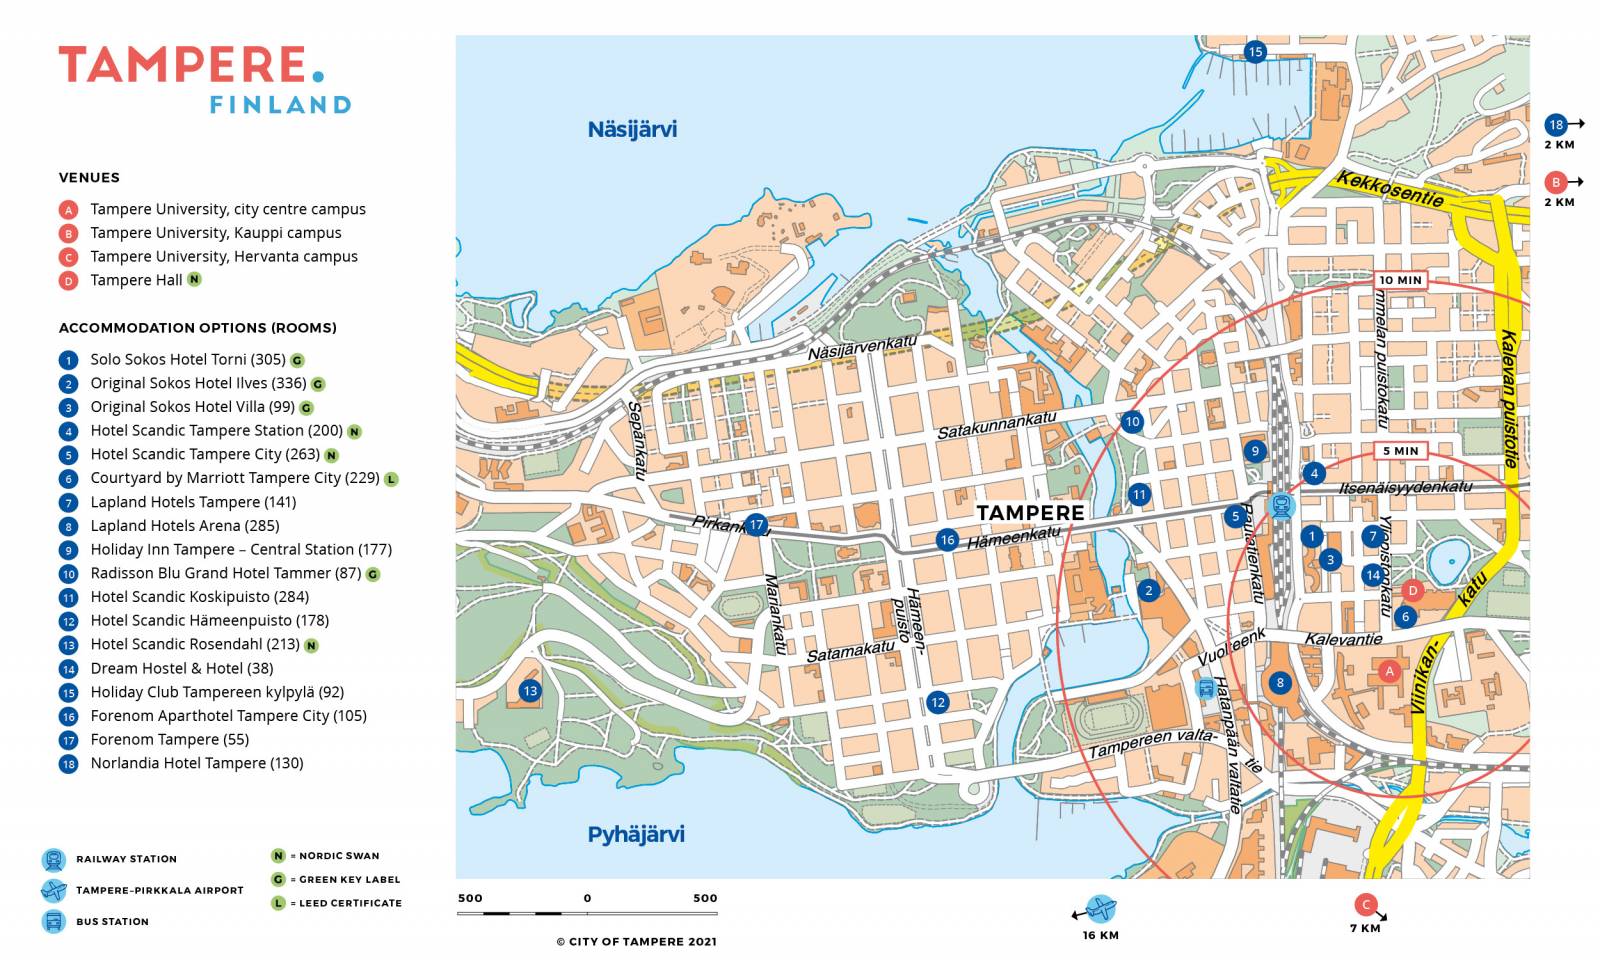 Tampereen kartta, jossa merkittynä hotellien sijainnit